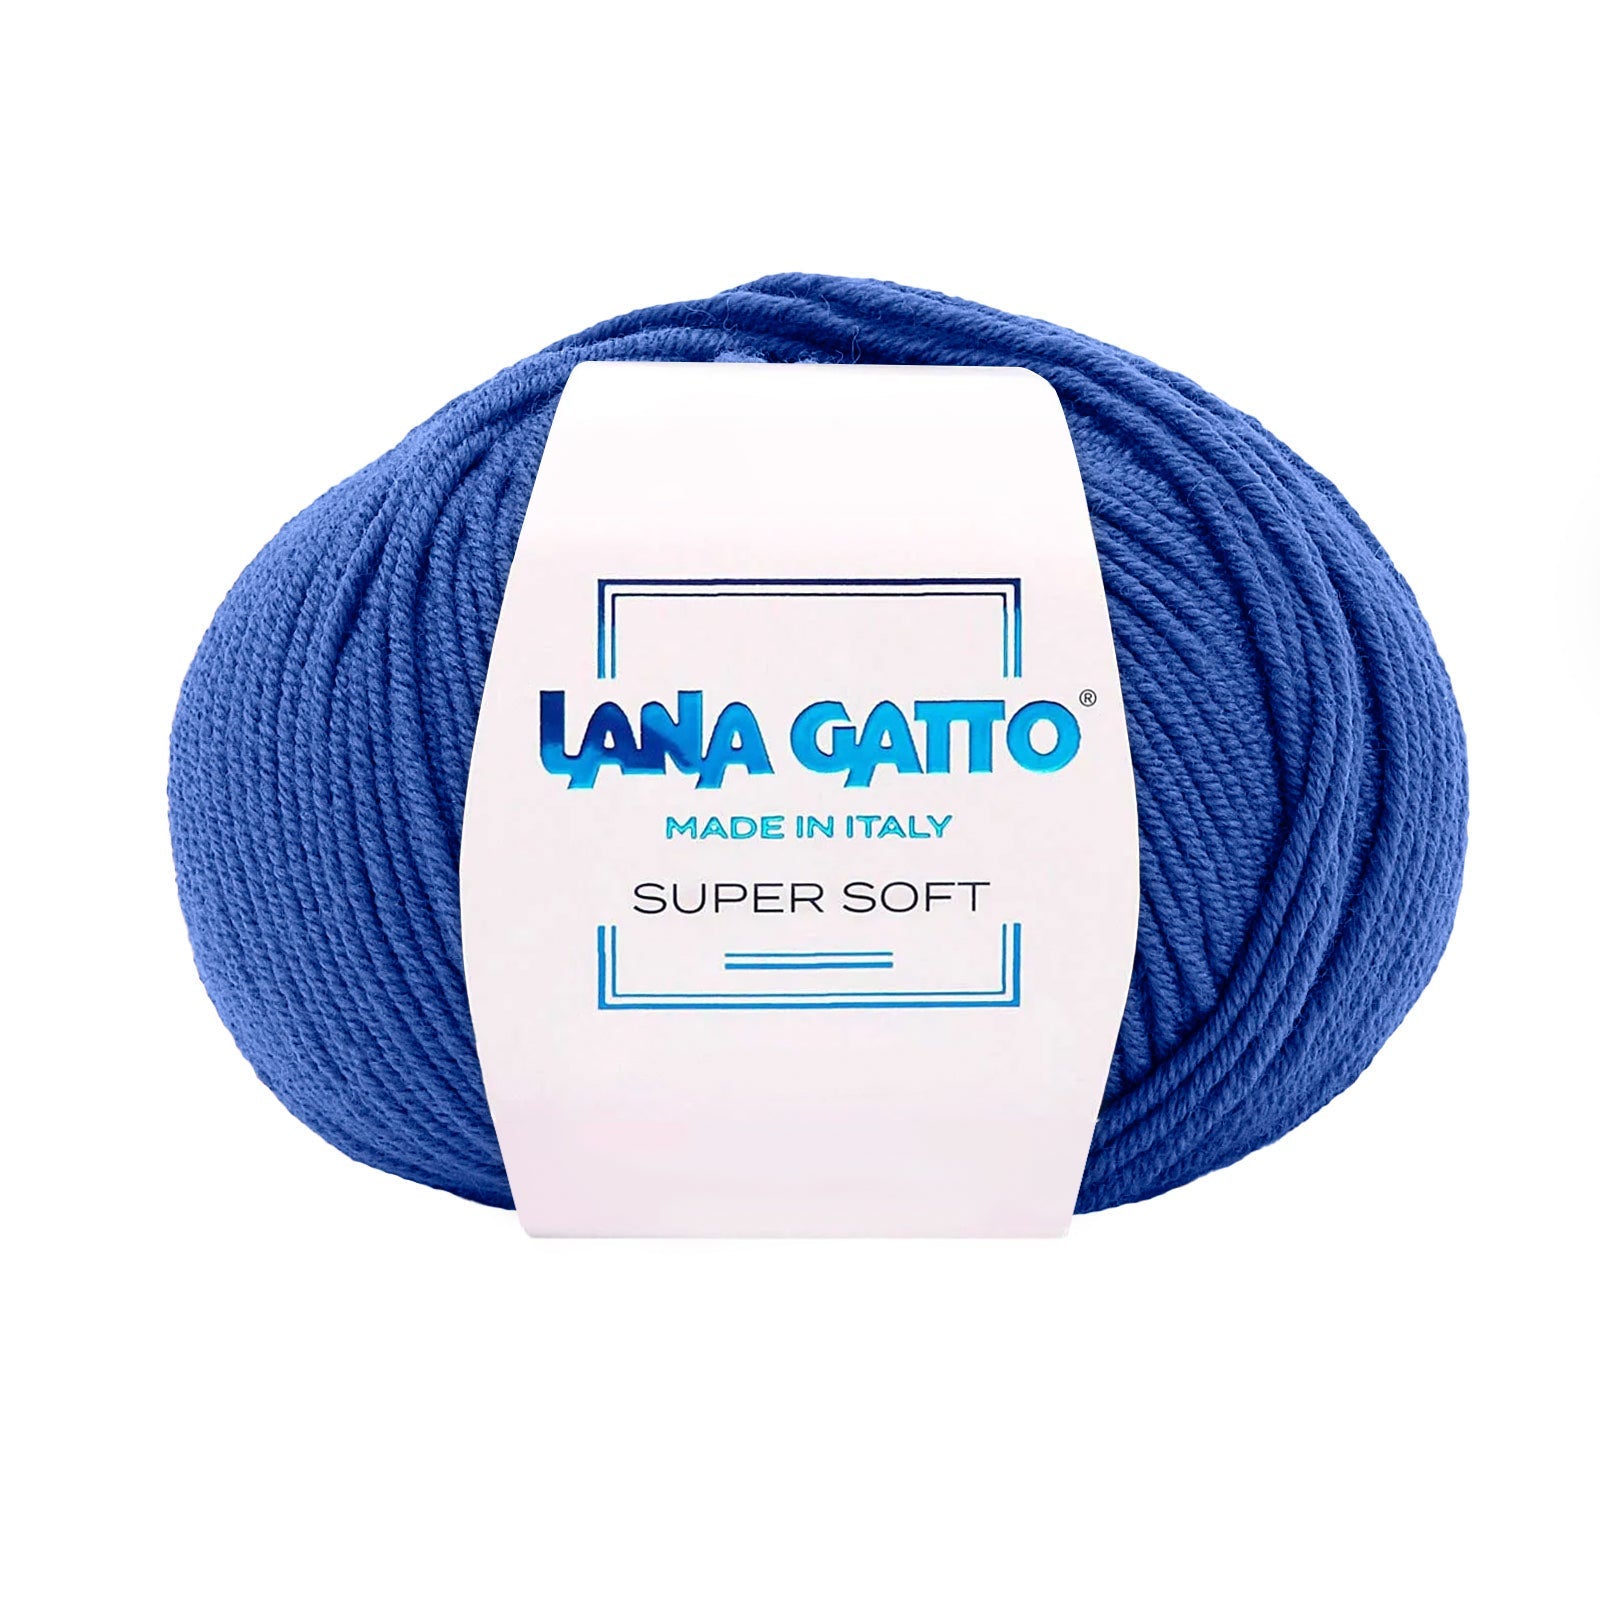 Gomitolo 100% Pura Lana Vergine Merino Extrafine Lana Gatto Linea Super Soft - Tonalità Blu - Blu - 13994 - Gomitolo